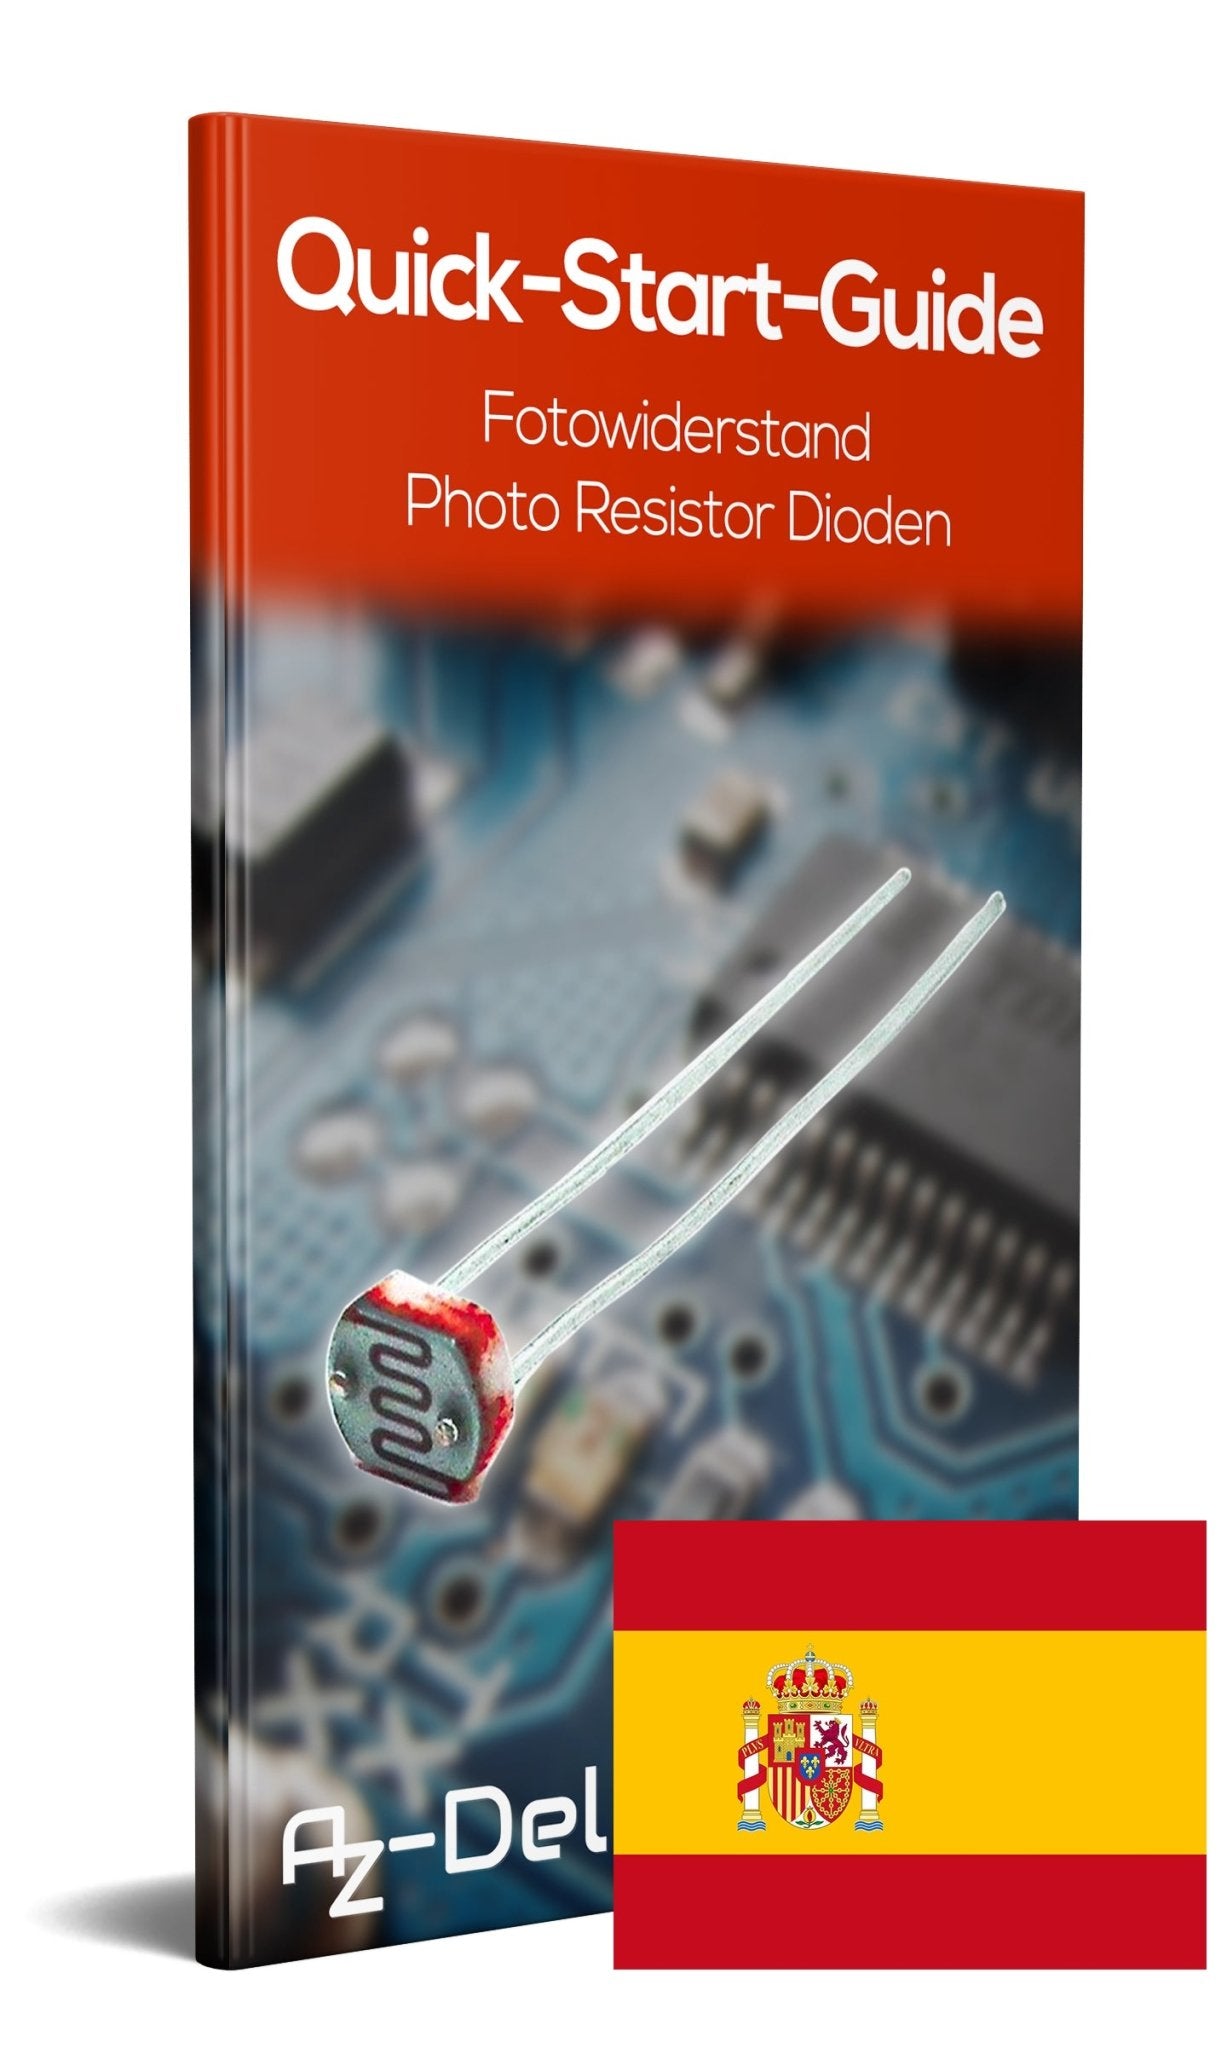 Fotowiderstand Photo Resistor Dioden Set 150V 5mm LDR5528 GL5528 5528 - AZ-Delivery